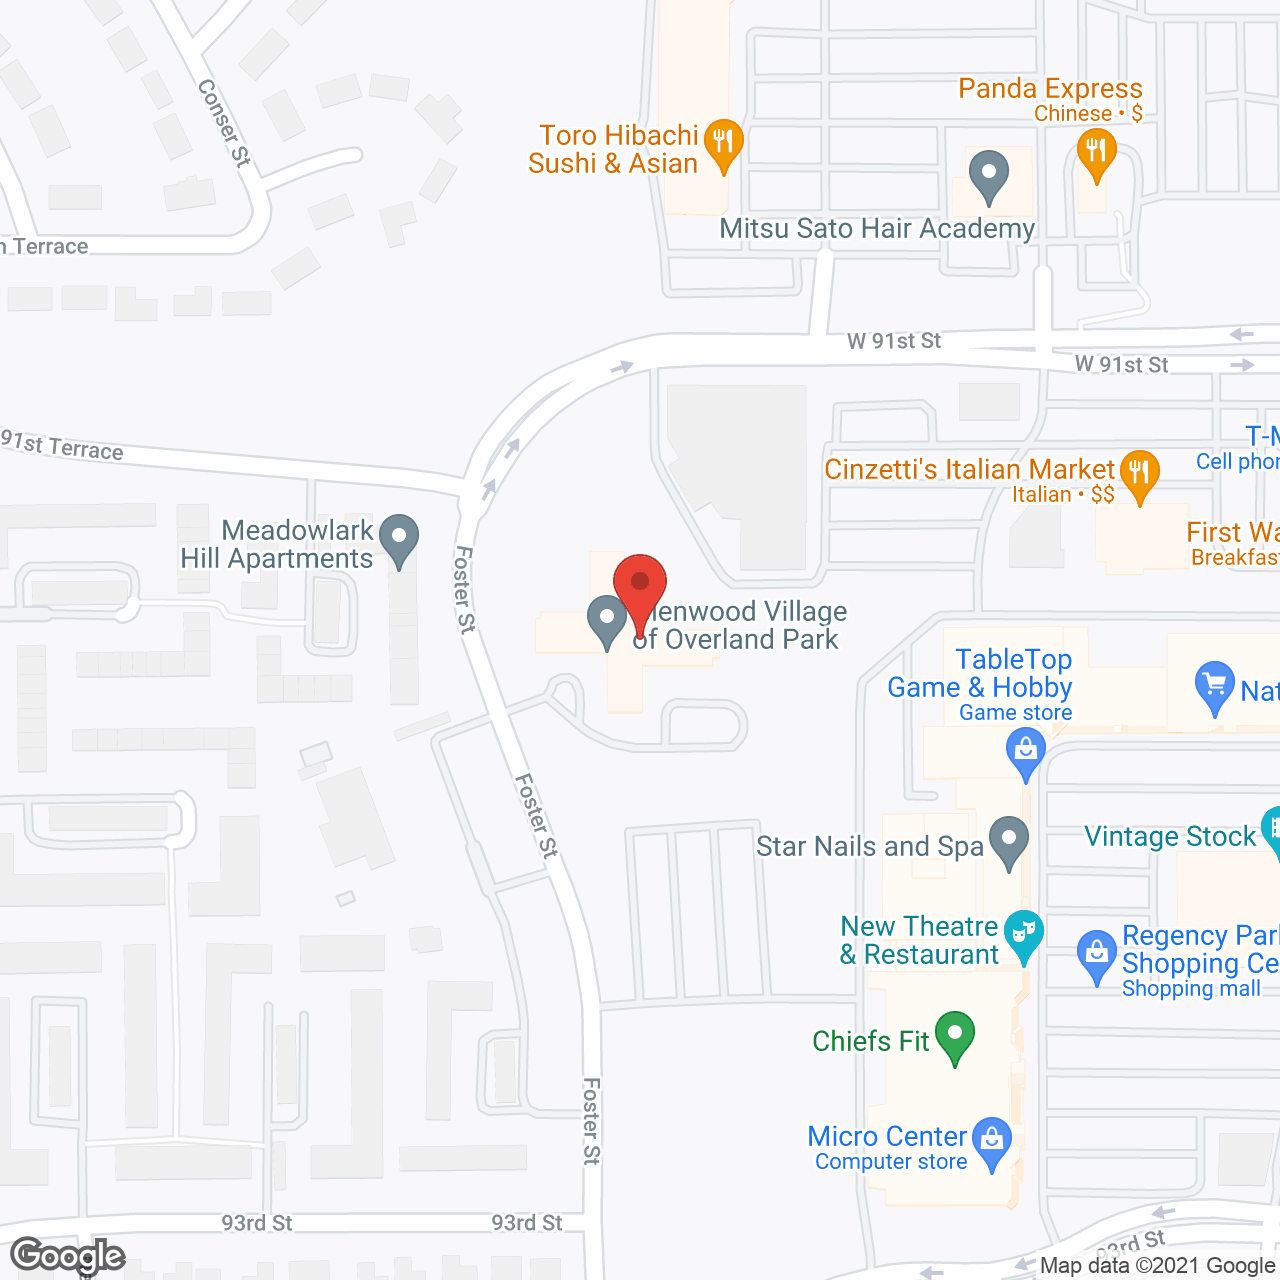 Glenwood Village of Overland Park in google map